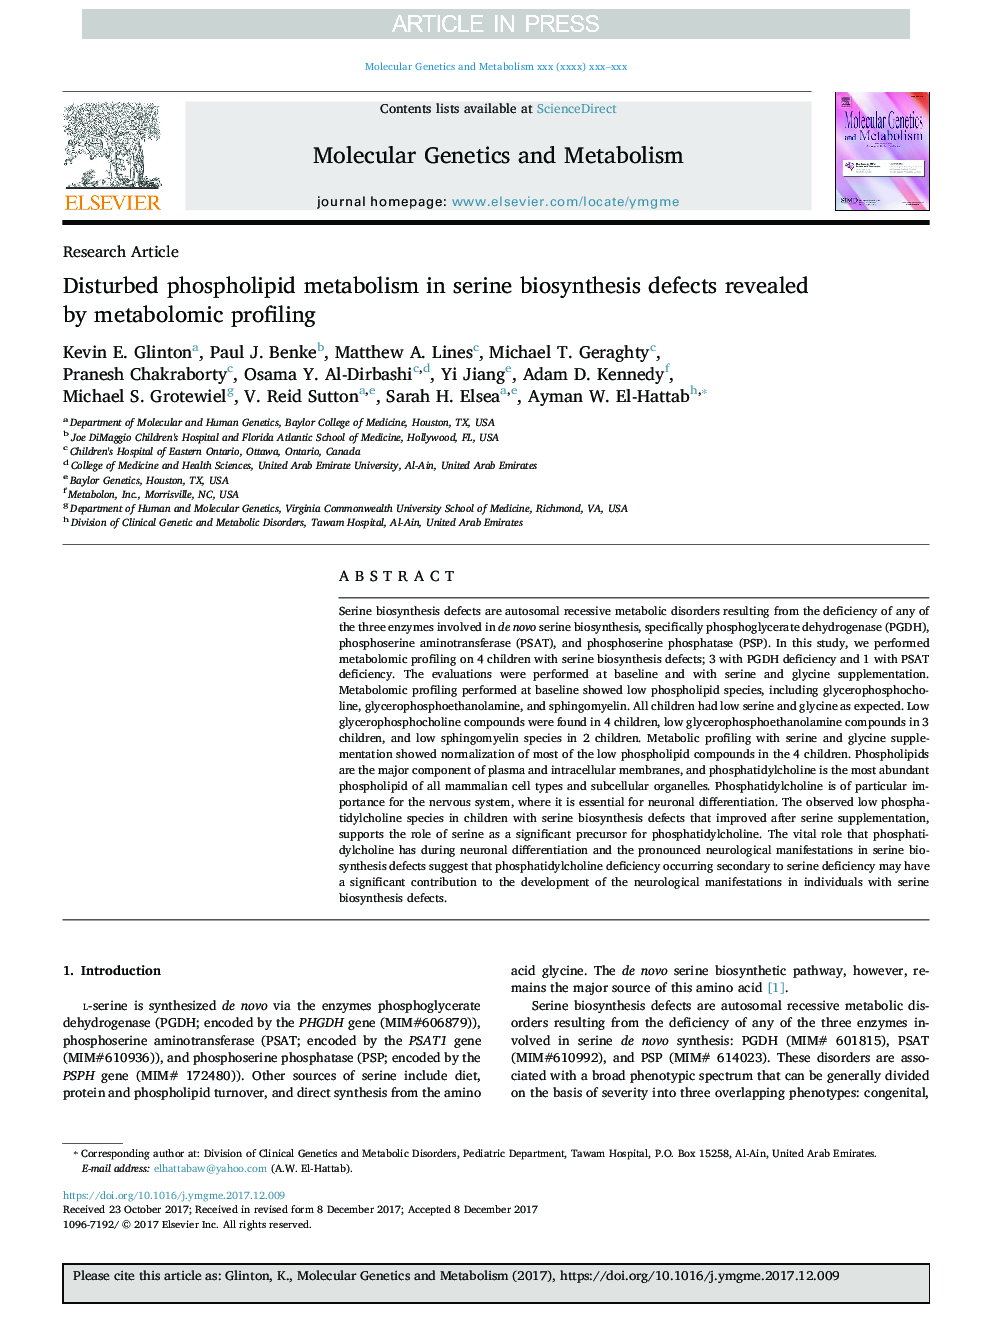 اختلالات متابولیسم فسفولیپید در نقص های بیوسنتز سرین نشان داده شده توسط پروفایل متابولیکی 